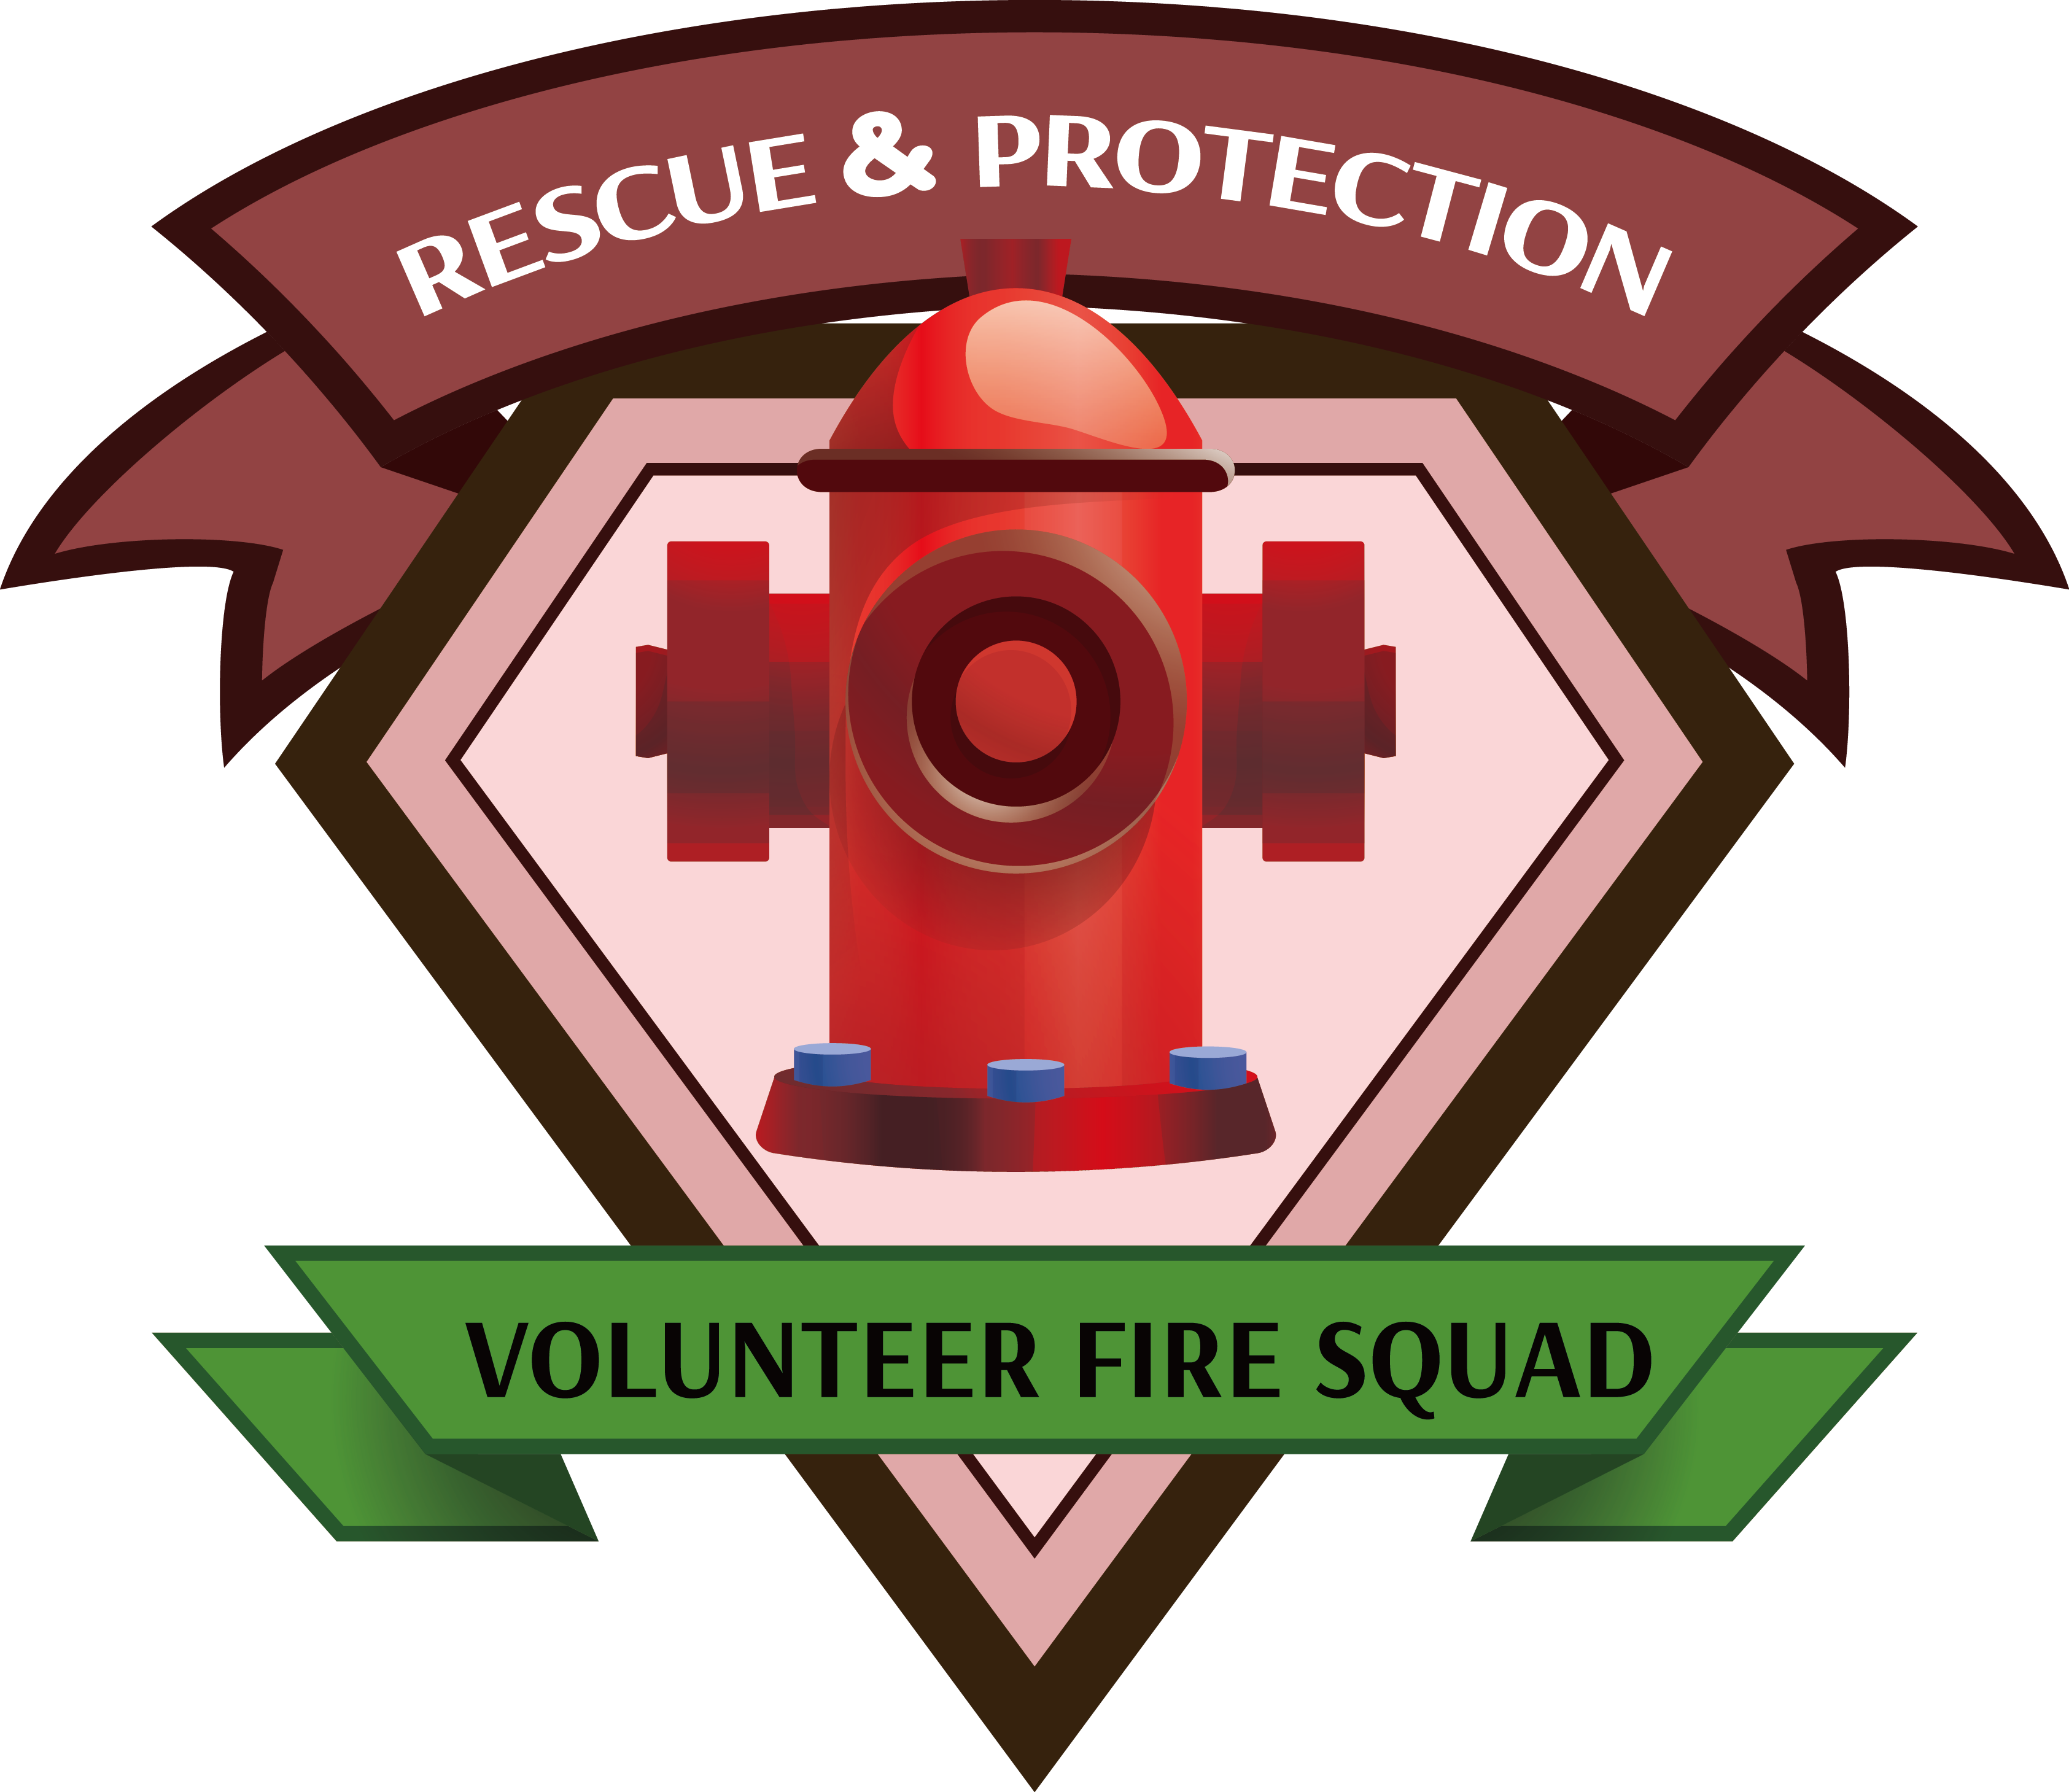 Fire Hydrant Firefighting - Fire Hydrant Firefighting (3370x2919)